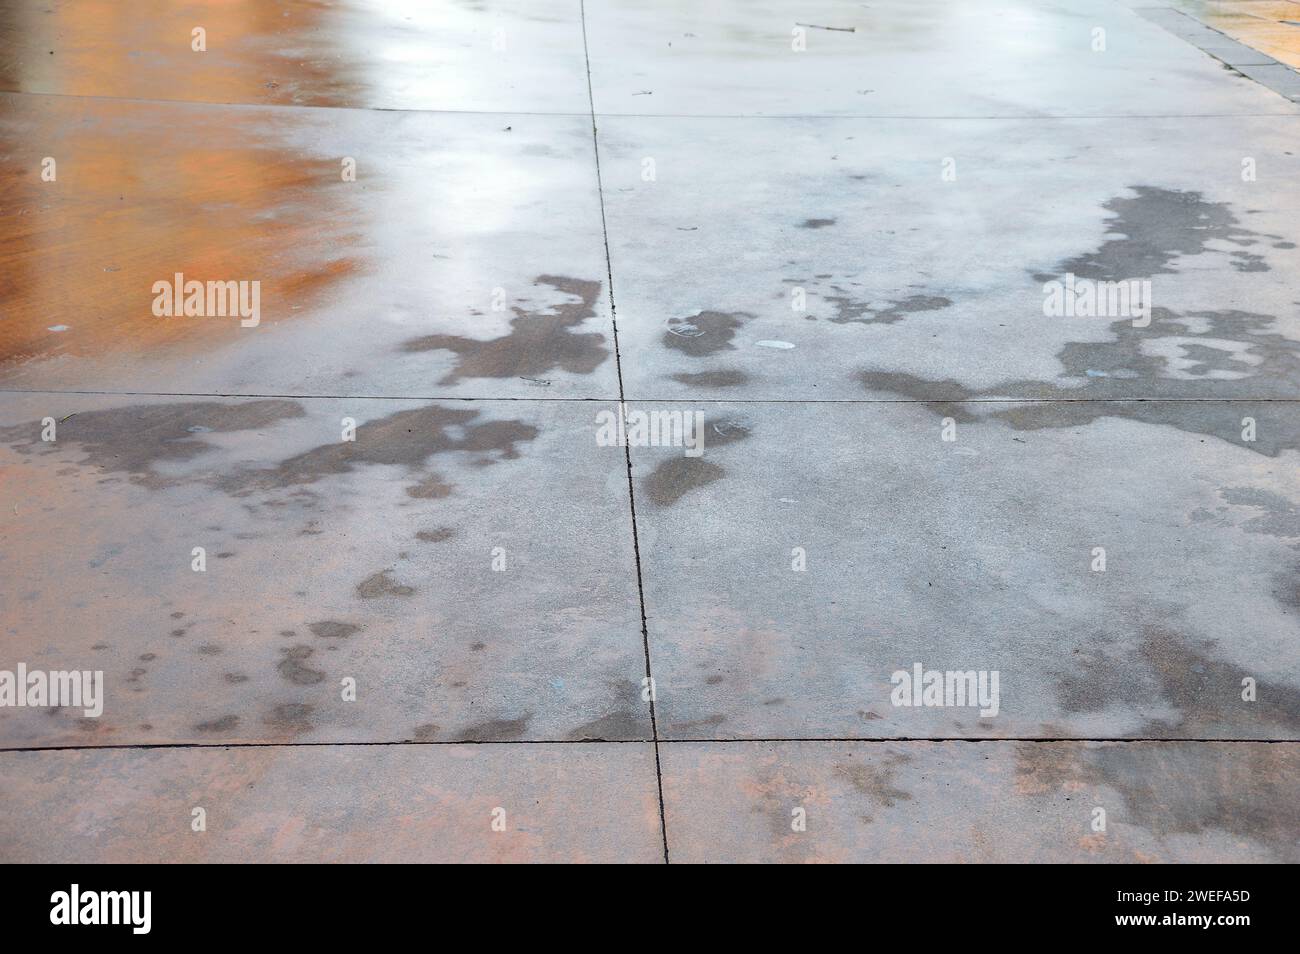 Nahaufnahme der Menschlichkeit auf dem Straßenboden. Nasser Boden durch Regen. Gefahrenunfall auf Gehsteig durch rutschiges Bodengefahrenkonzept. Stockfoto